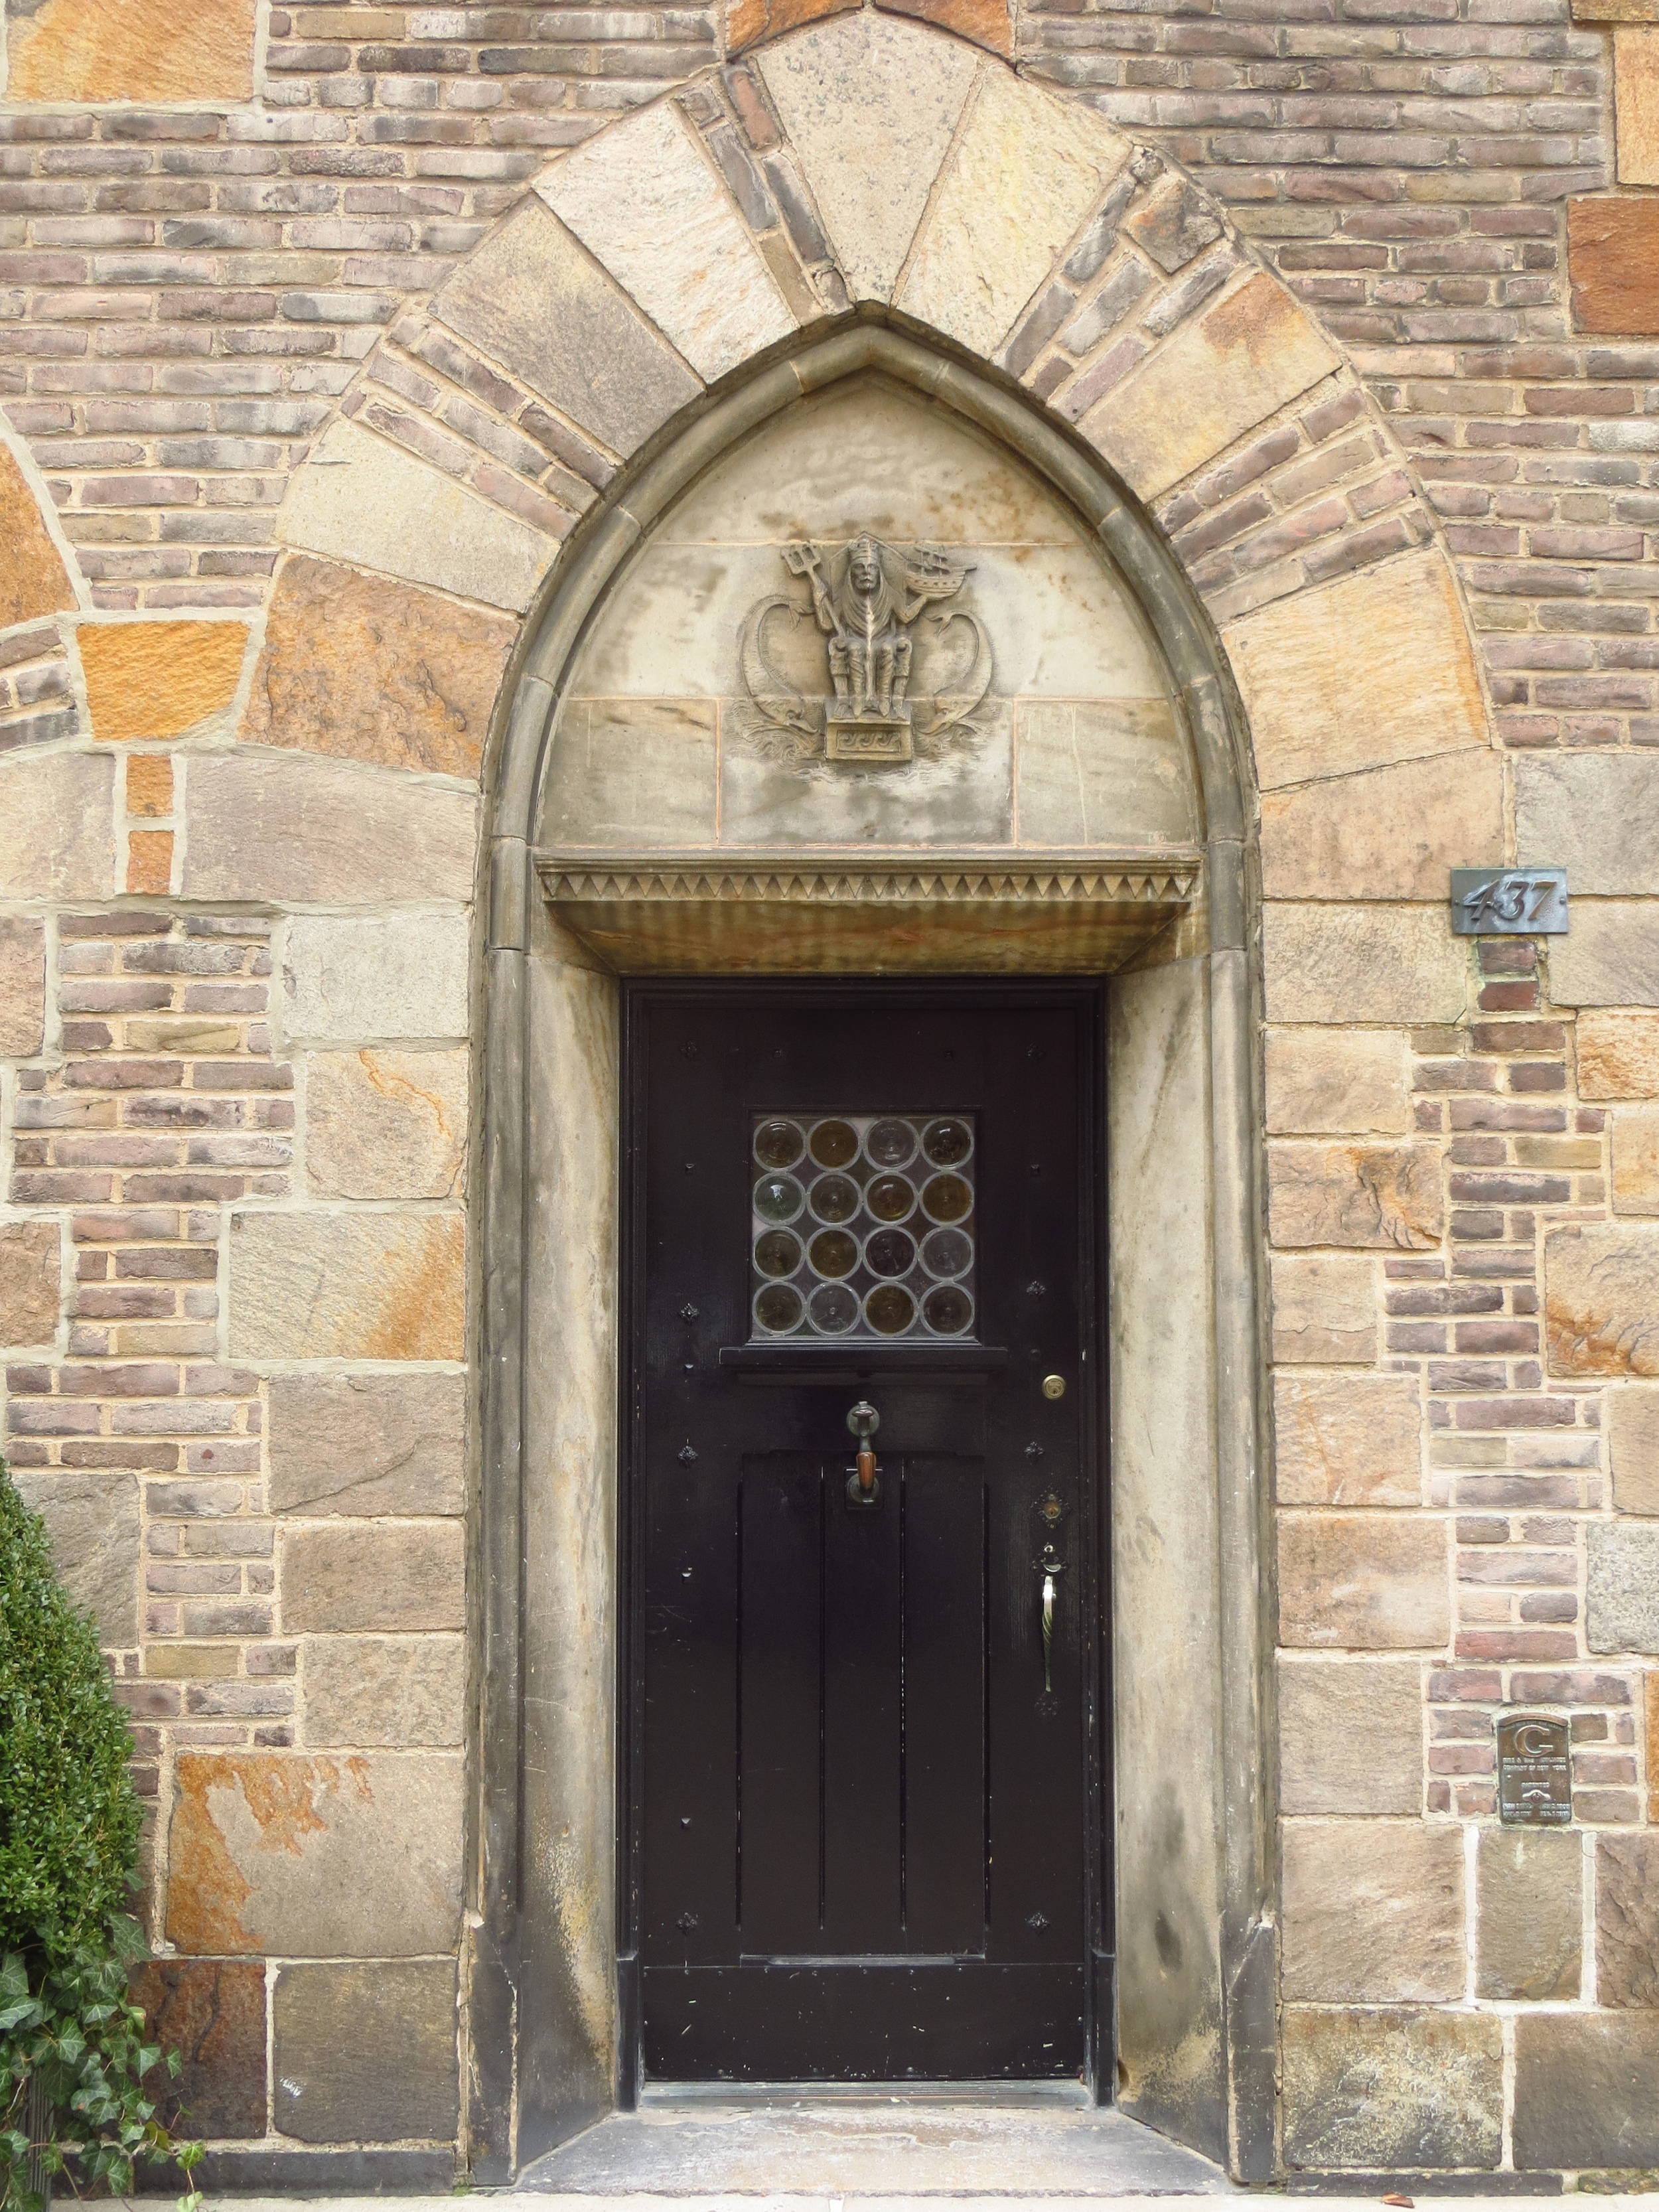 Gothic arch doorway